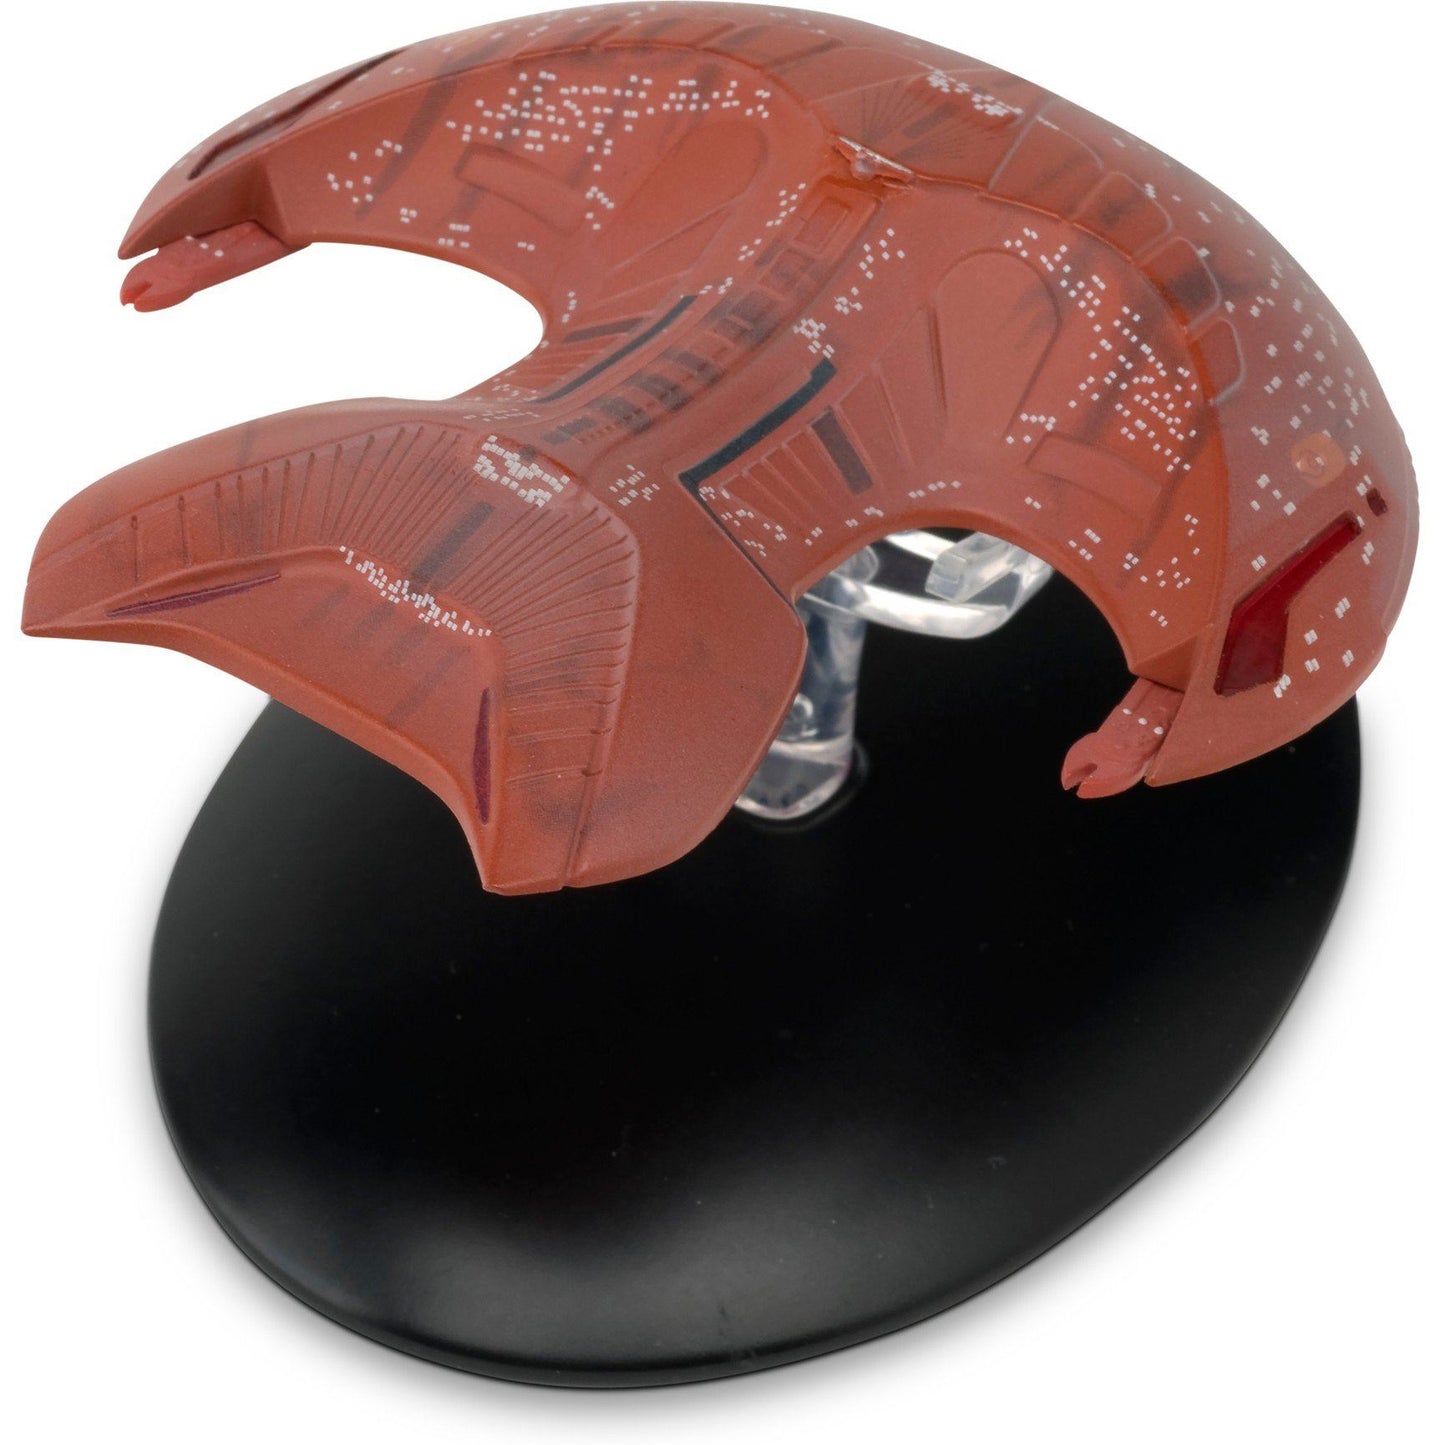 #16 Ferengi Marauder Model Die Cast Ship Eaglemoss Star Trek